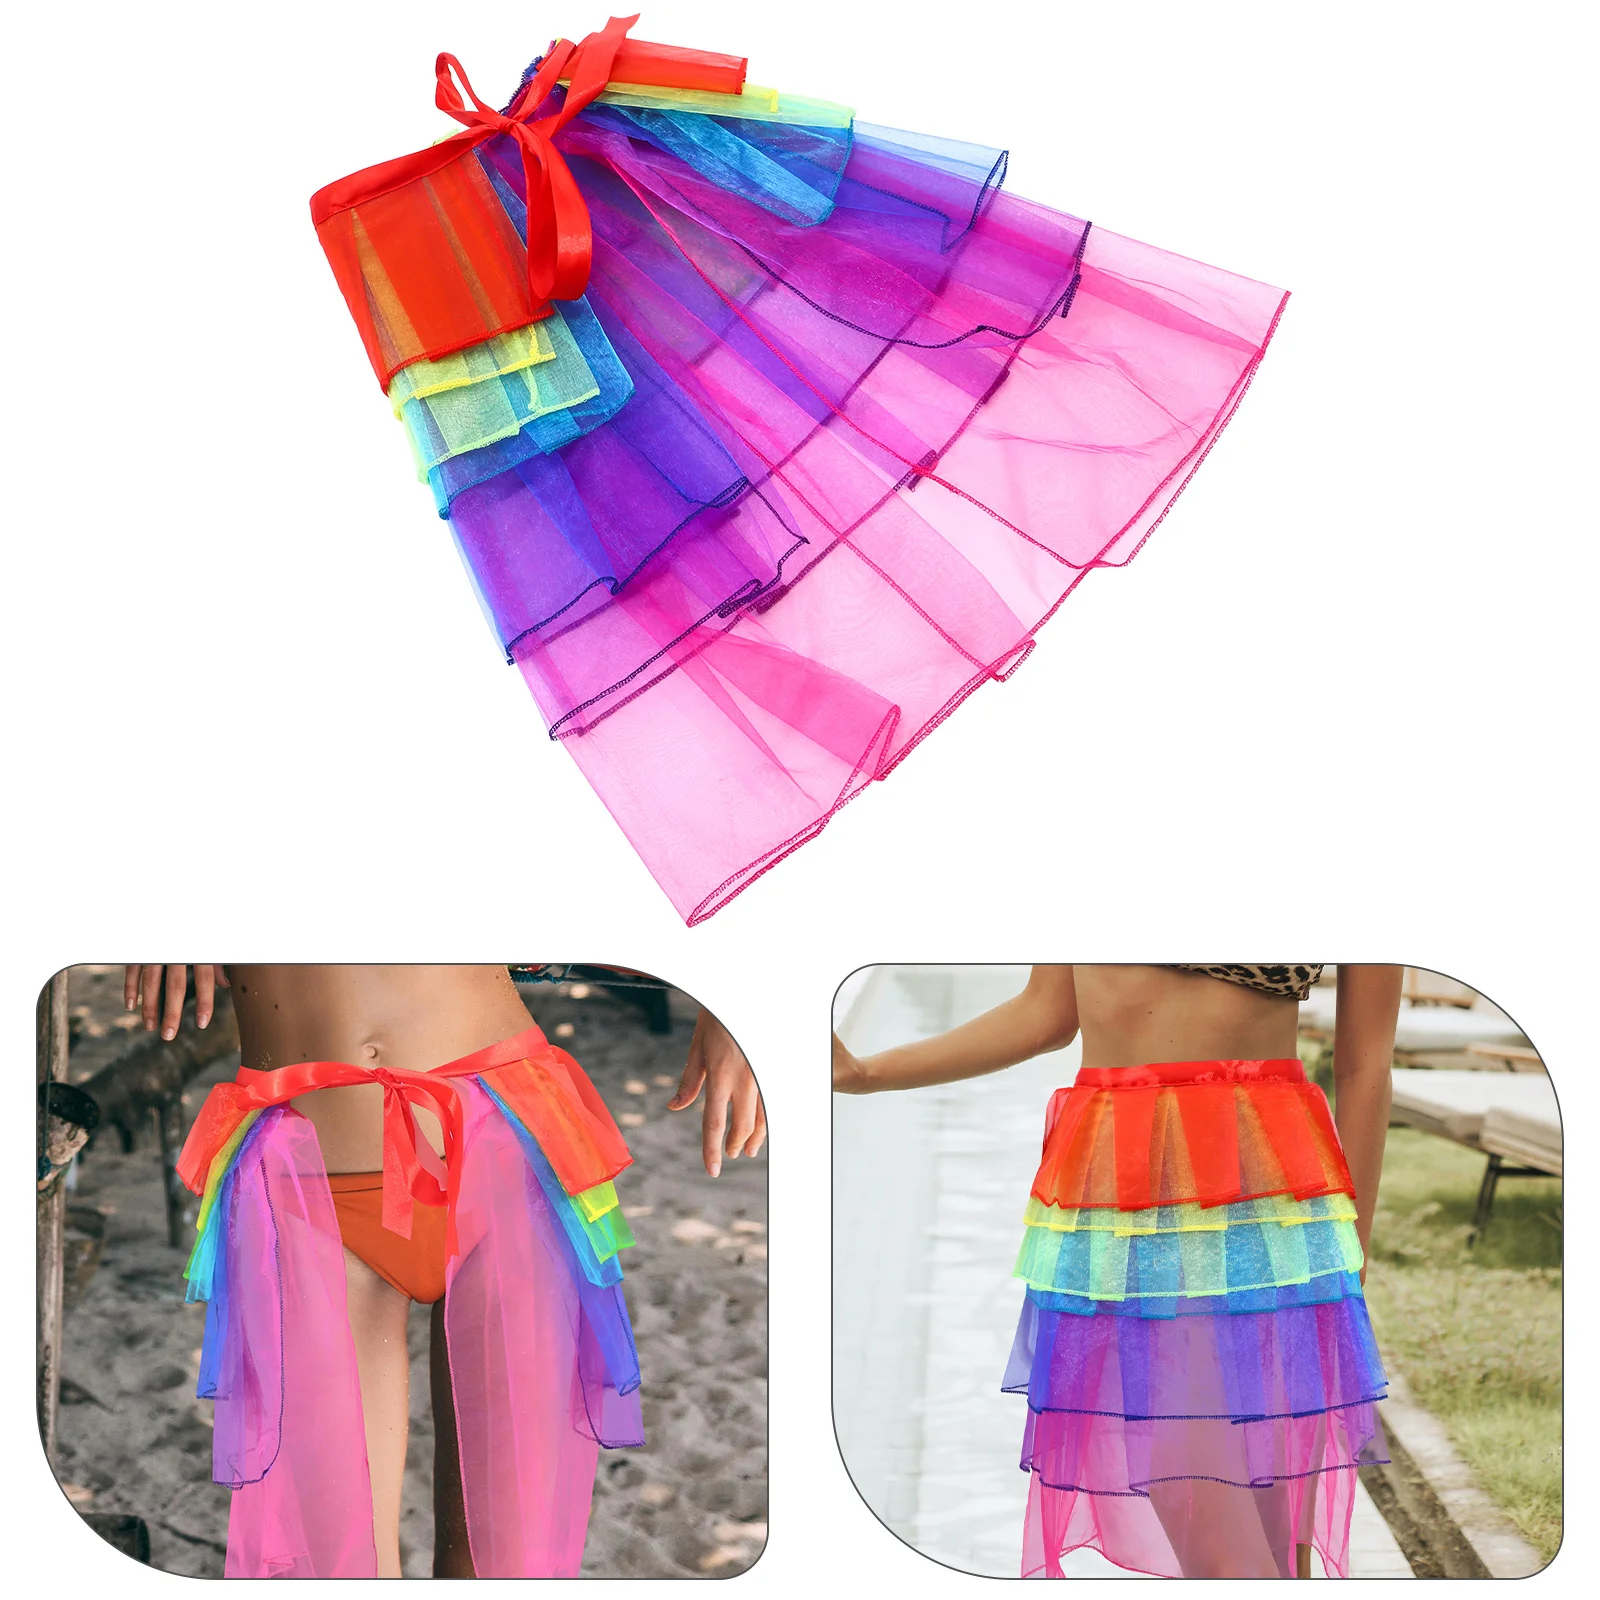 

Женская юбка-пачка, многослойная Радужная юбка из органзы, танцевальное платье, свободный размер